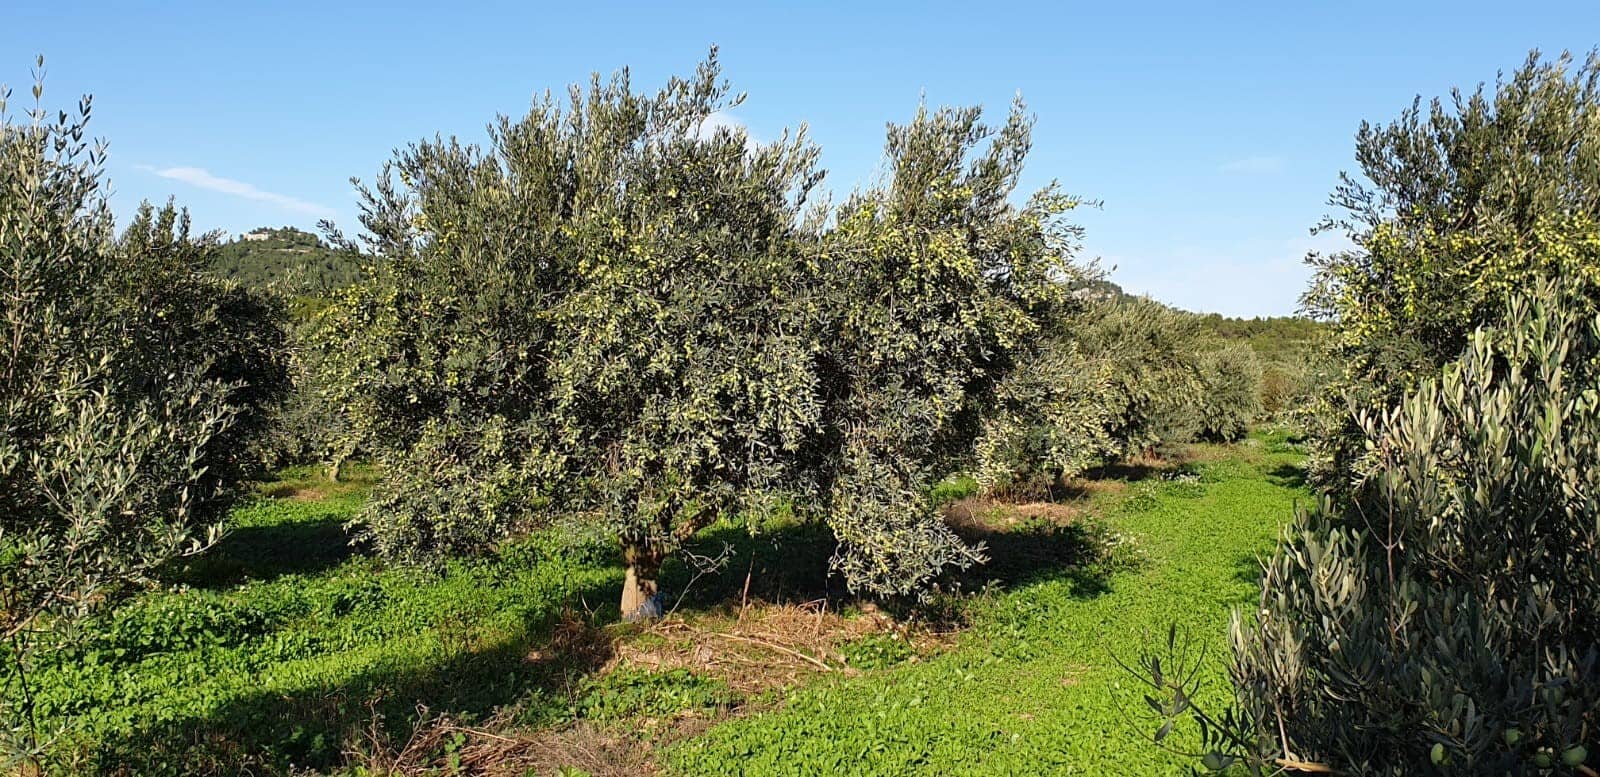 europa-profiles-productie-de-beste-olijfolie-een-familie-traditie-schiet wortel-bij-moulin-de-la-coquille-olijfolie-tijden